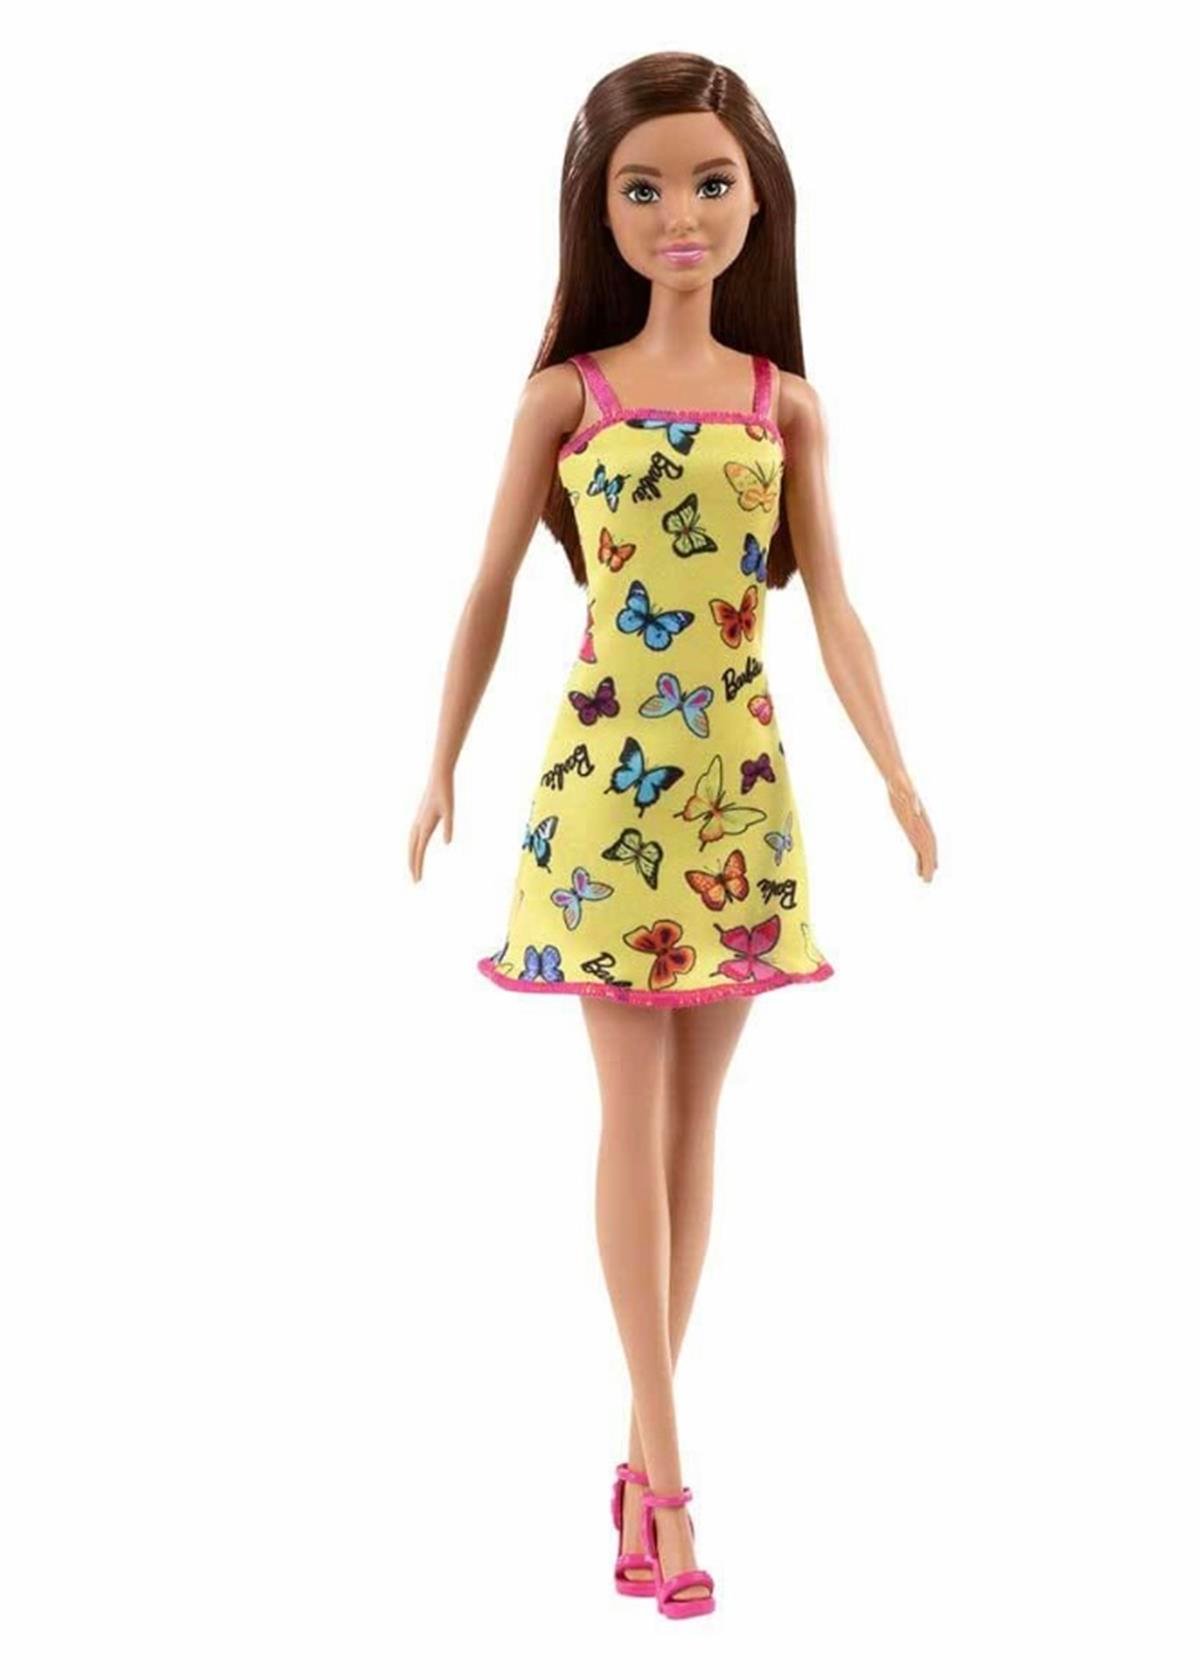 Barbie Şık Barbie Bebek - Sarı Kelebekli